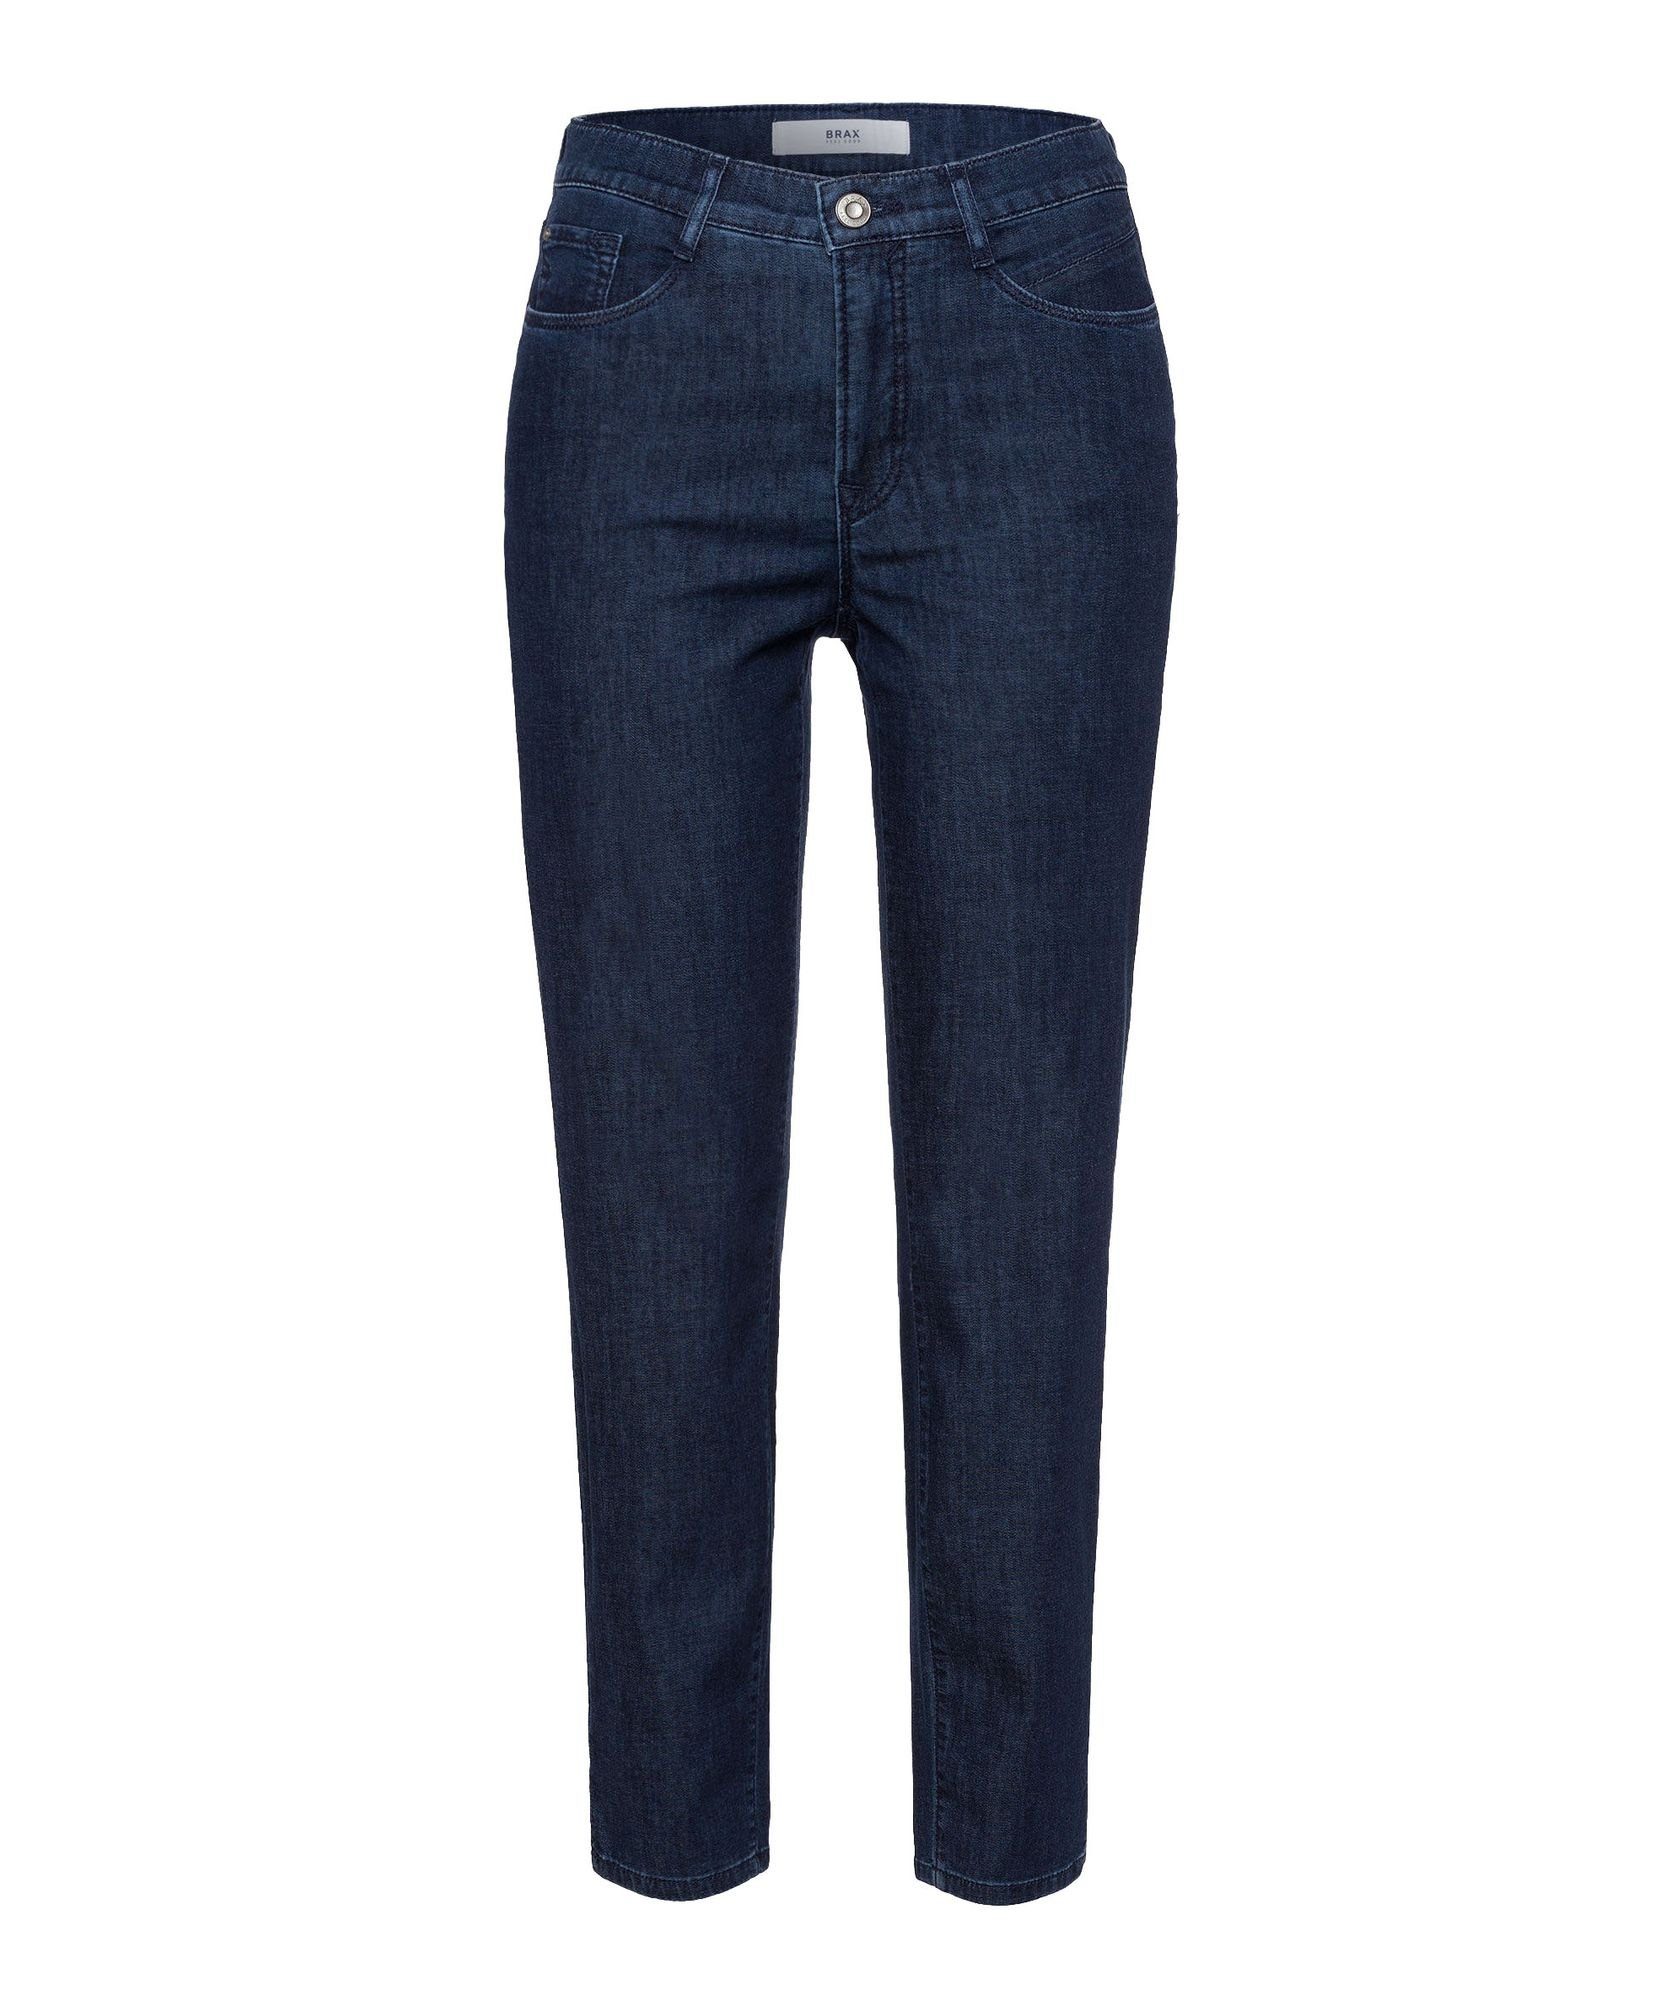 Brax 5-Pocket-Jeans Caro S (74-6657) clean dark blue (23)